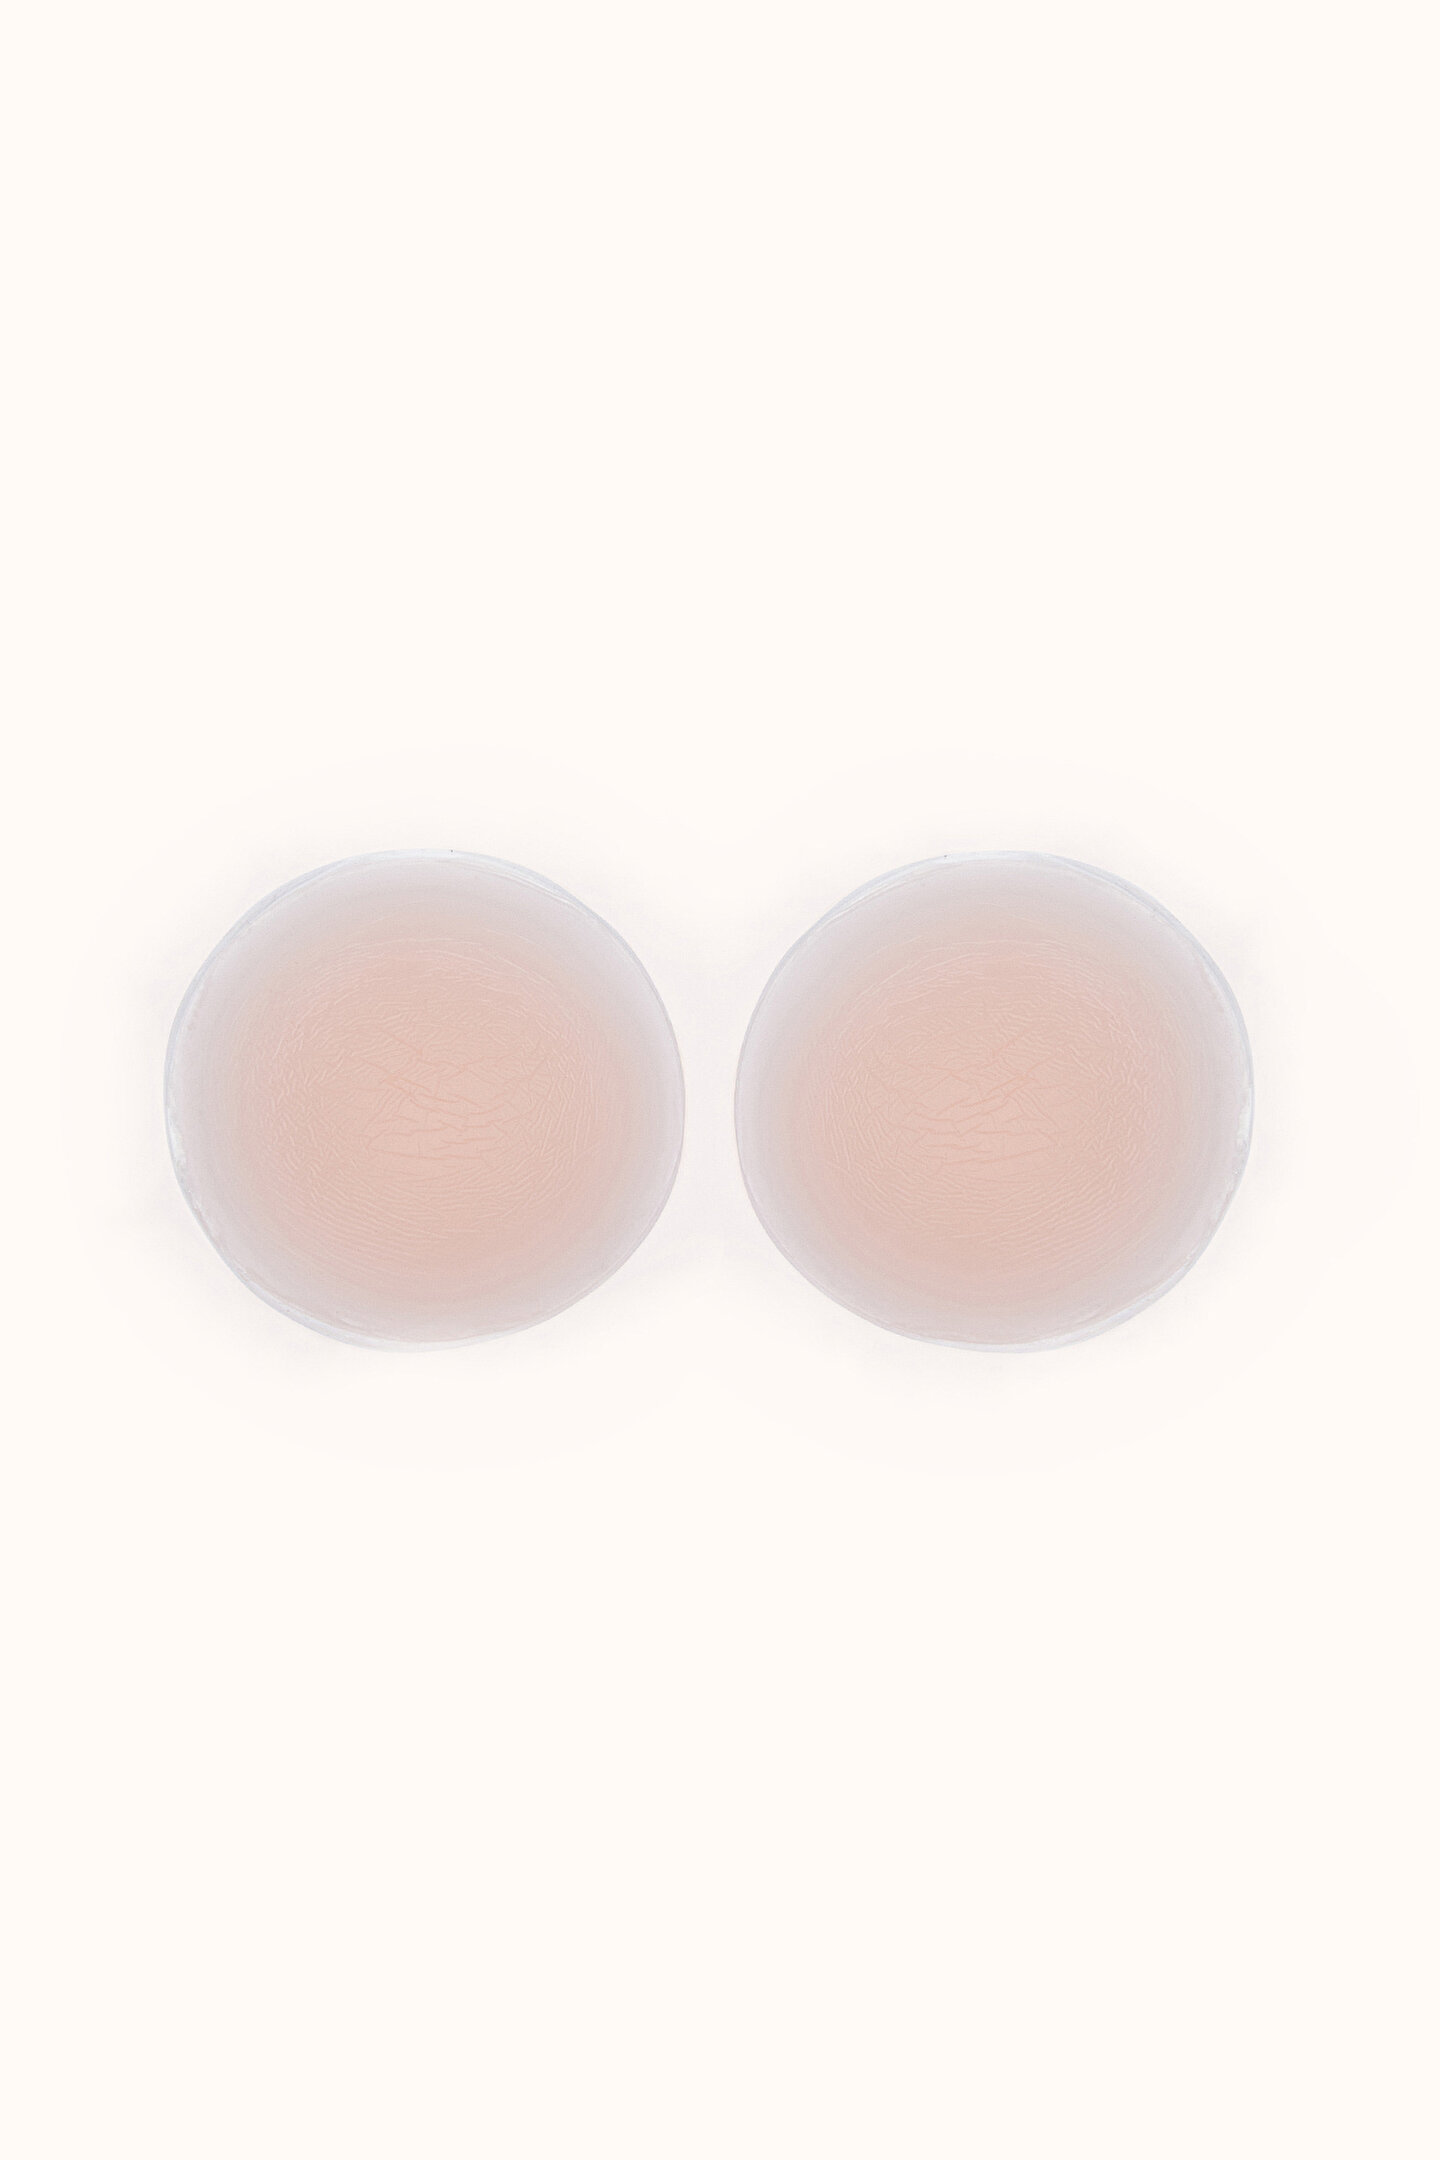 Nipple Concealer - 1